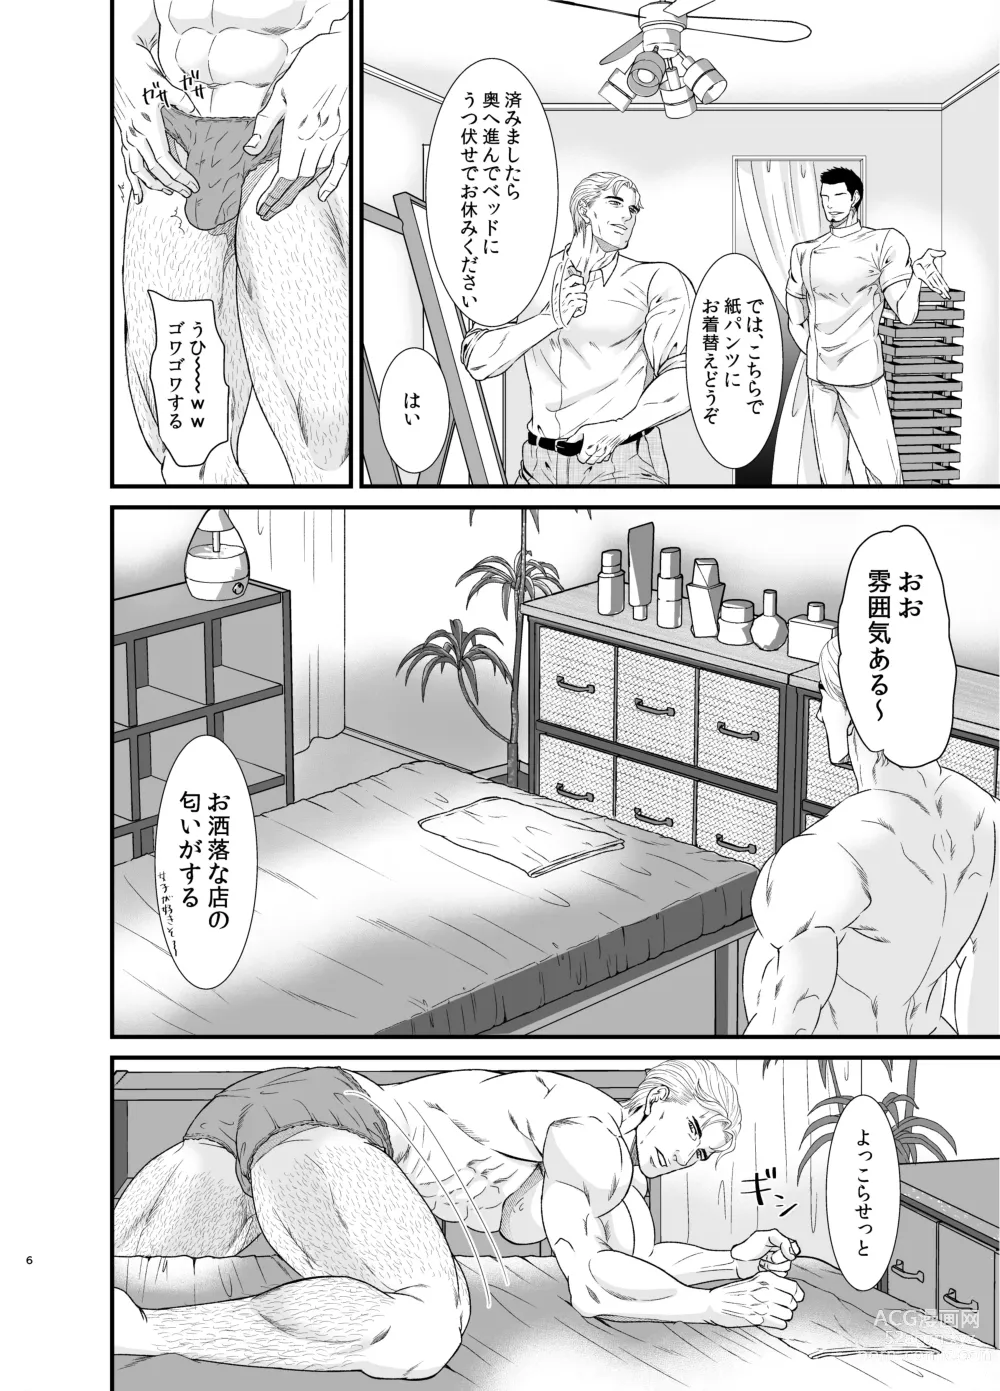 Page 5 of doujinshi Feeling Good